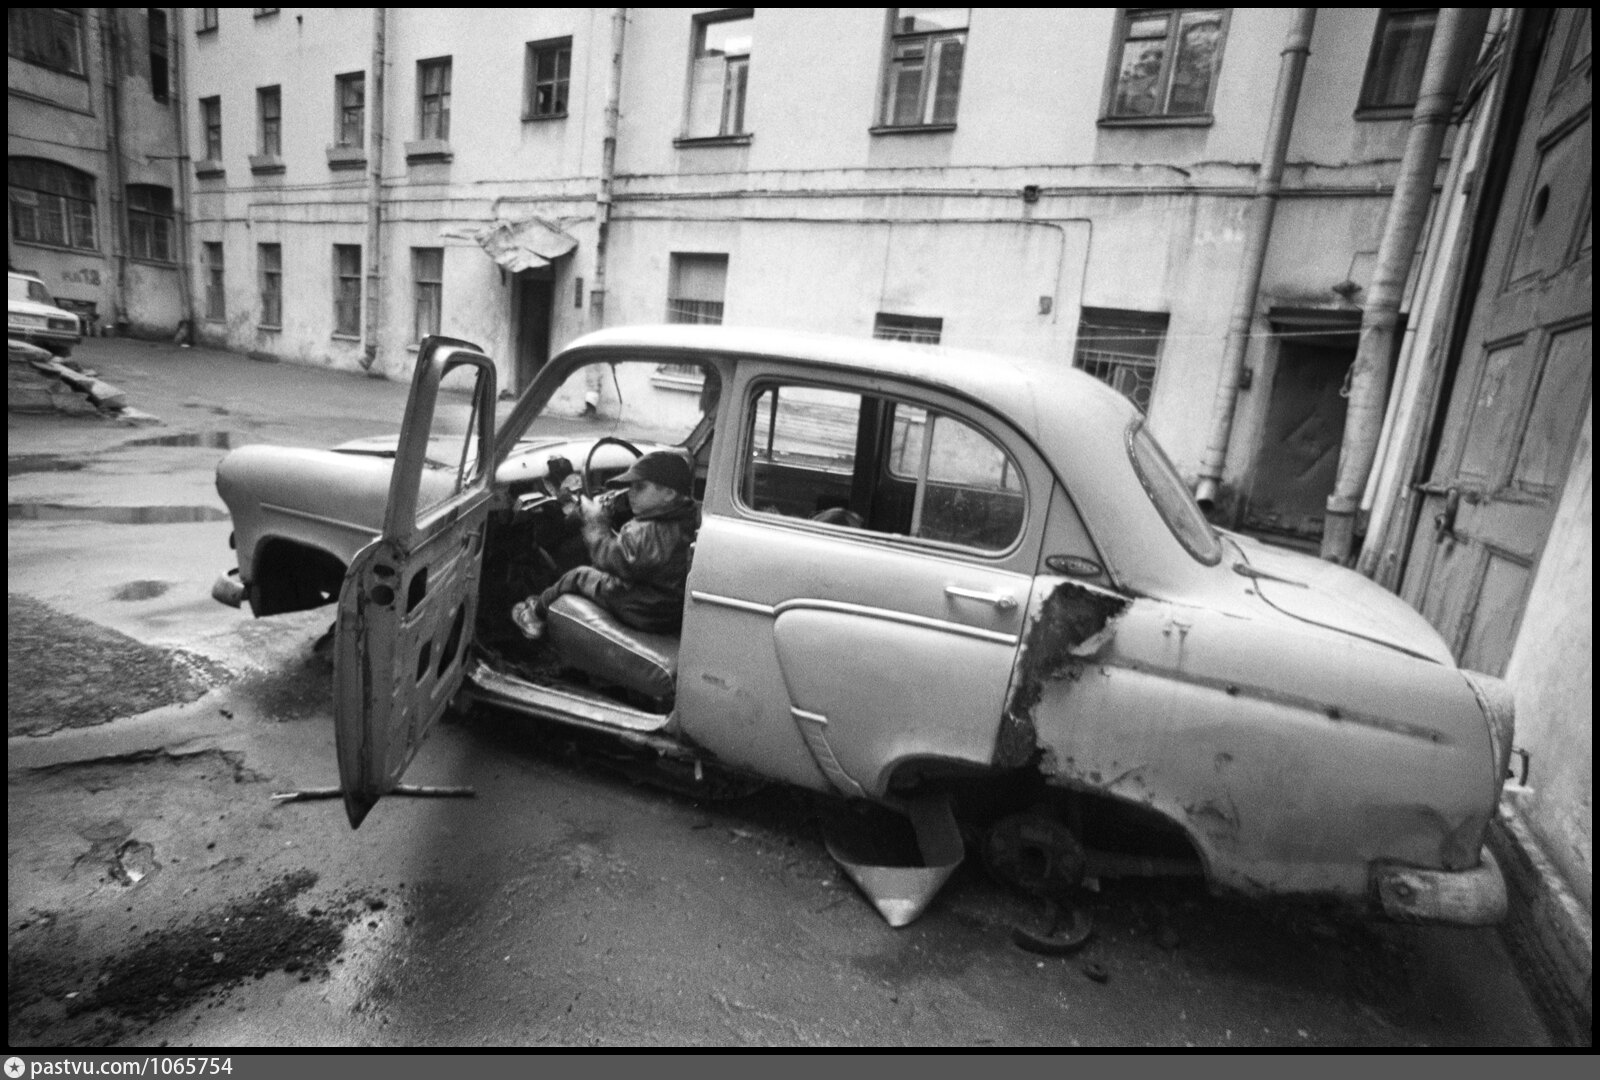 Разбитая машина во дворе. Разбитый автомобиль. Ленинград дворы.